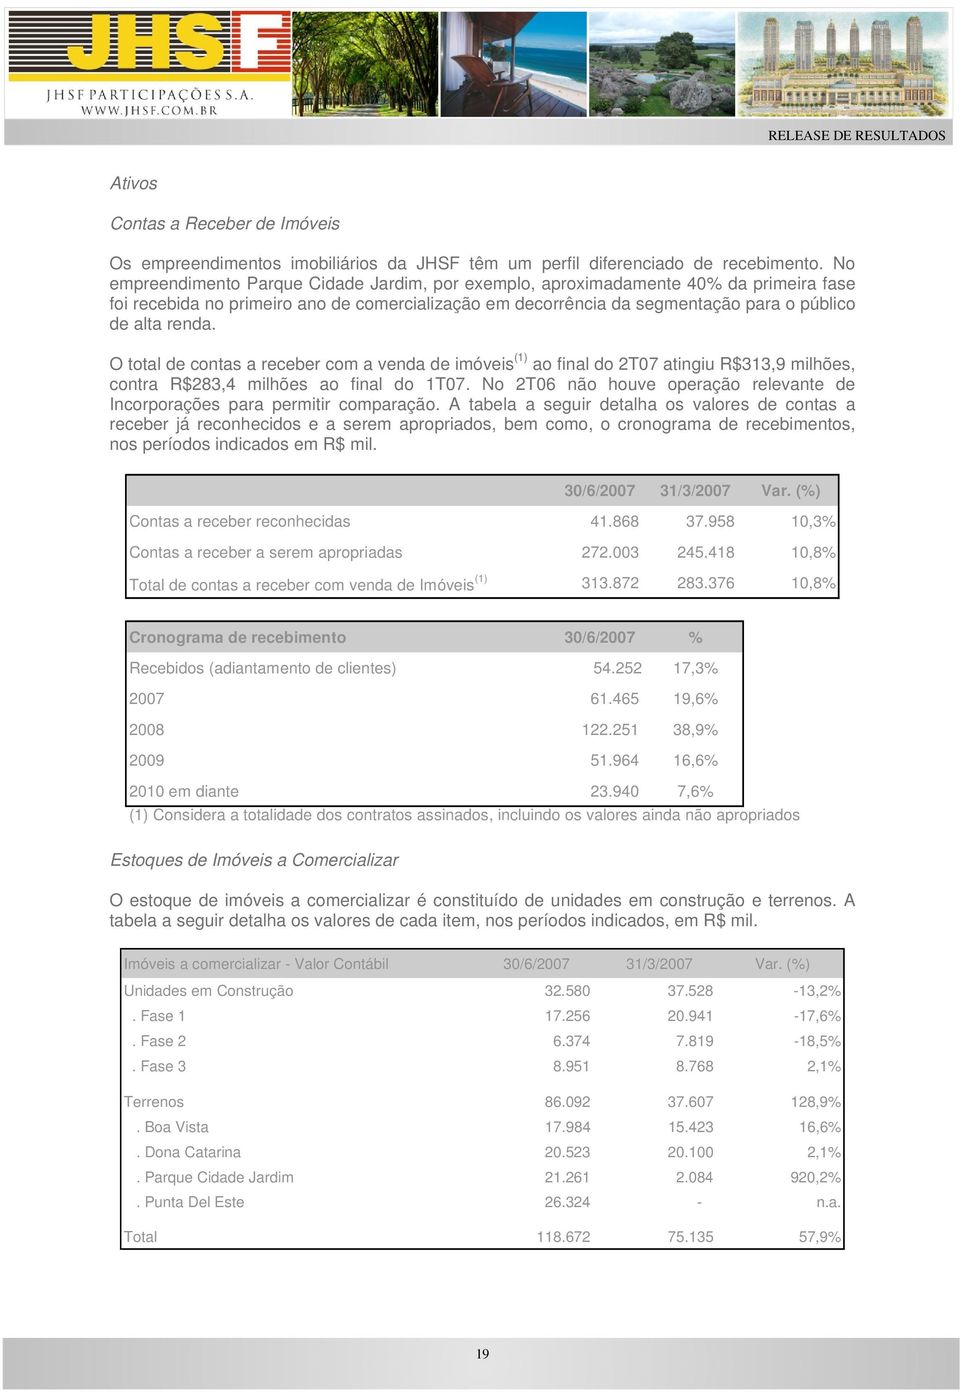 O total de contas a receber com a venda de imóveis (1) ao final do 2T07 atingiu R$313,9 milhões, contra R$283,4 milhões ao final do 1T07.